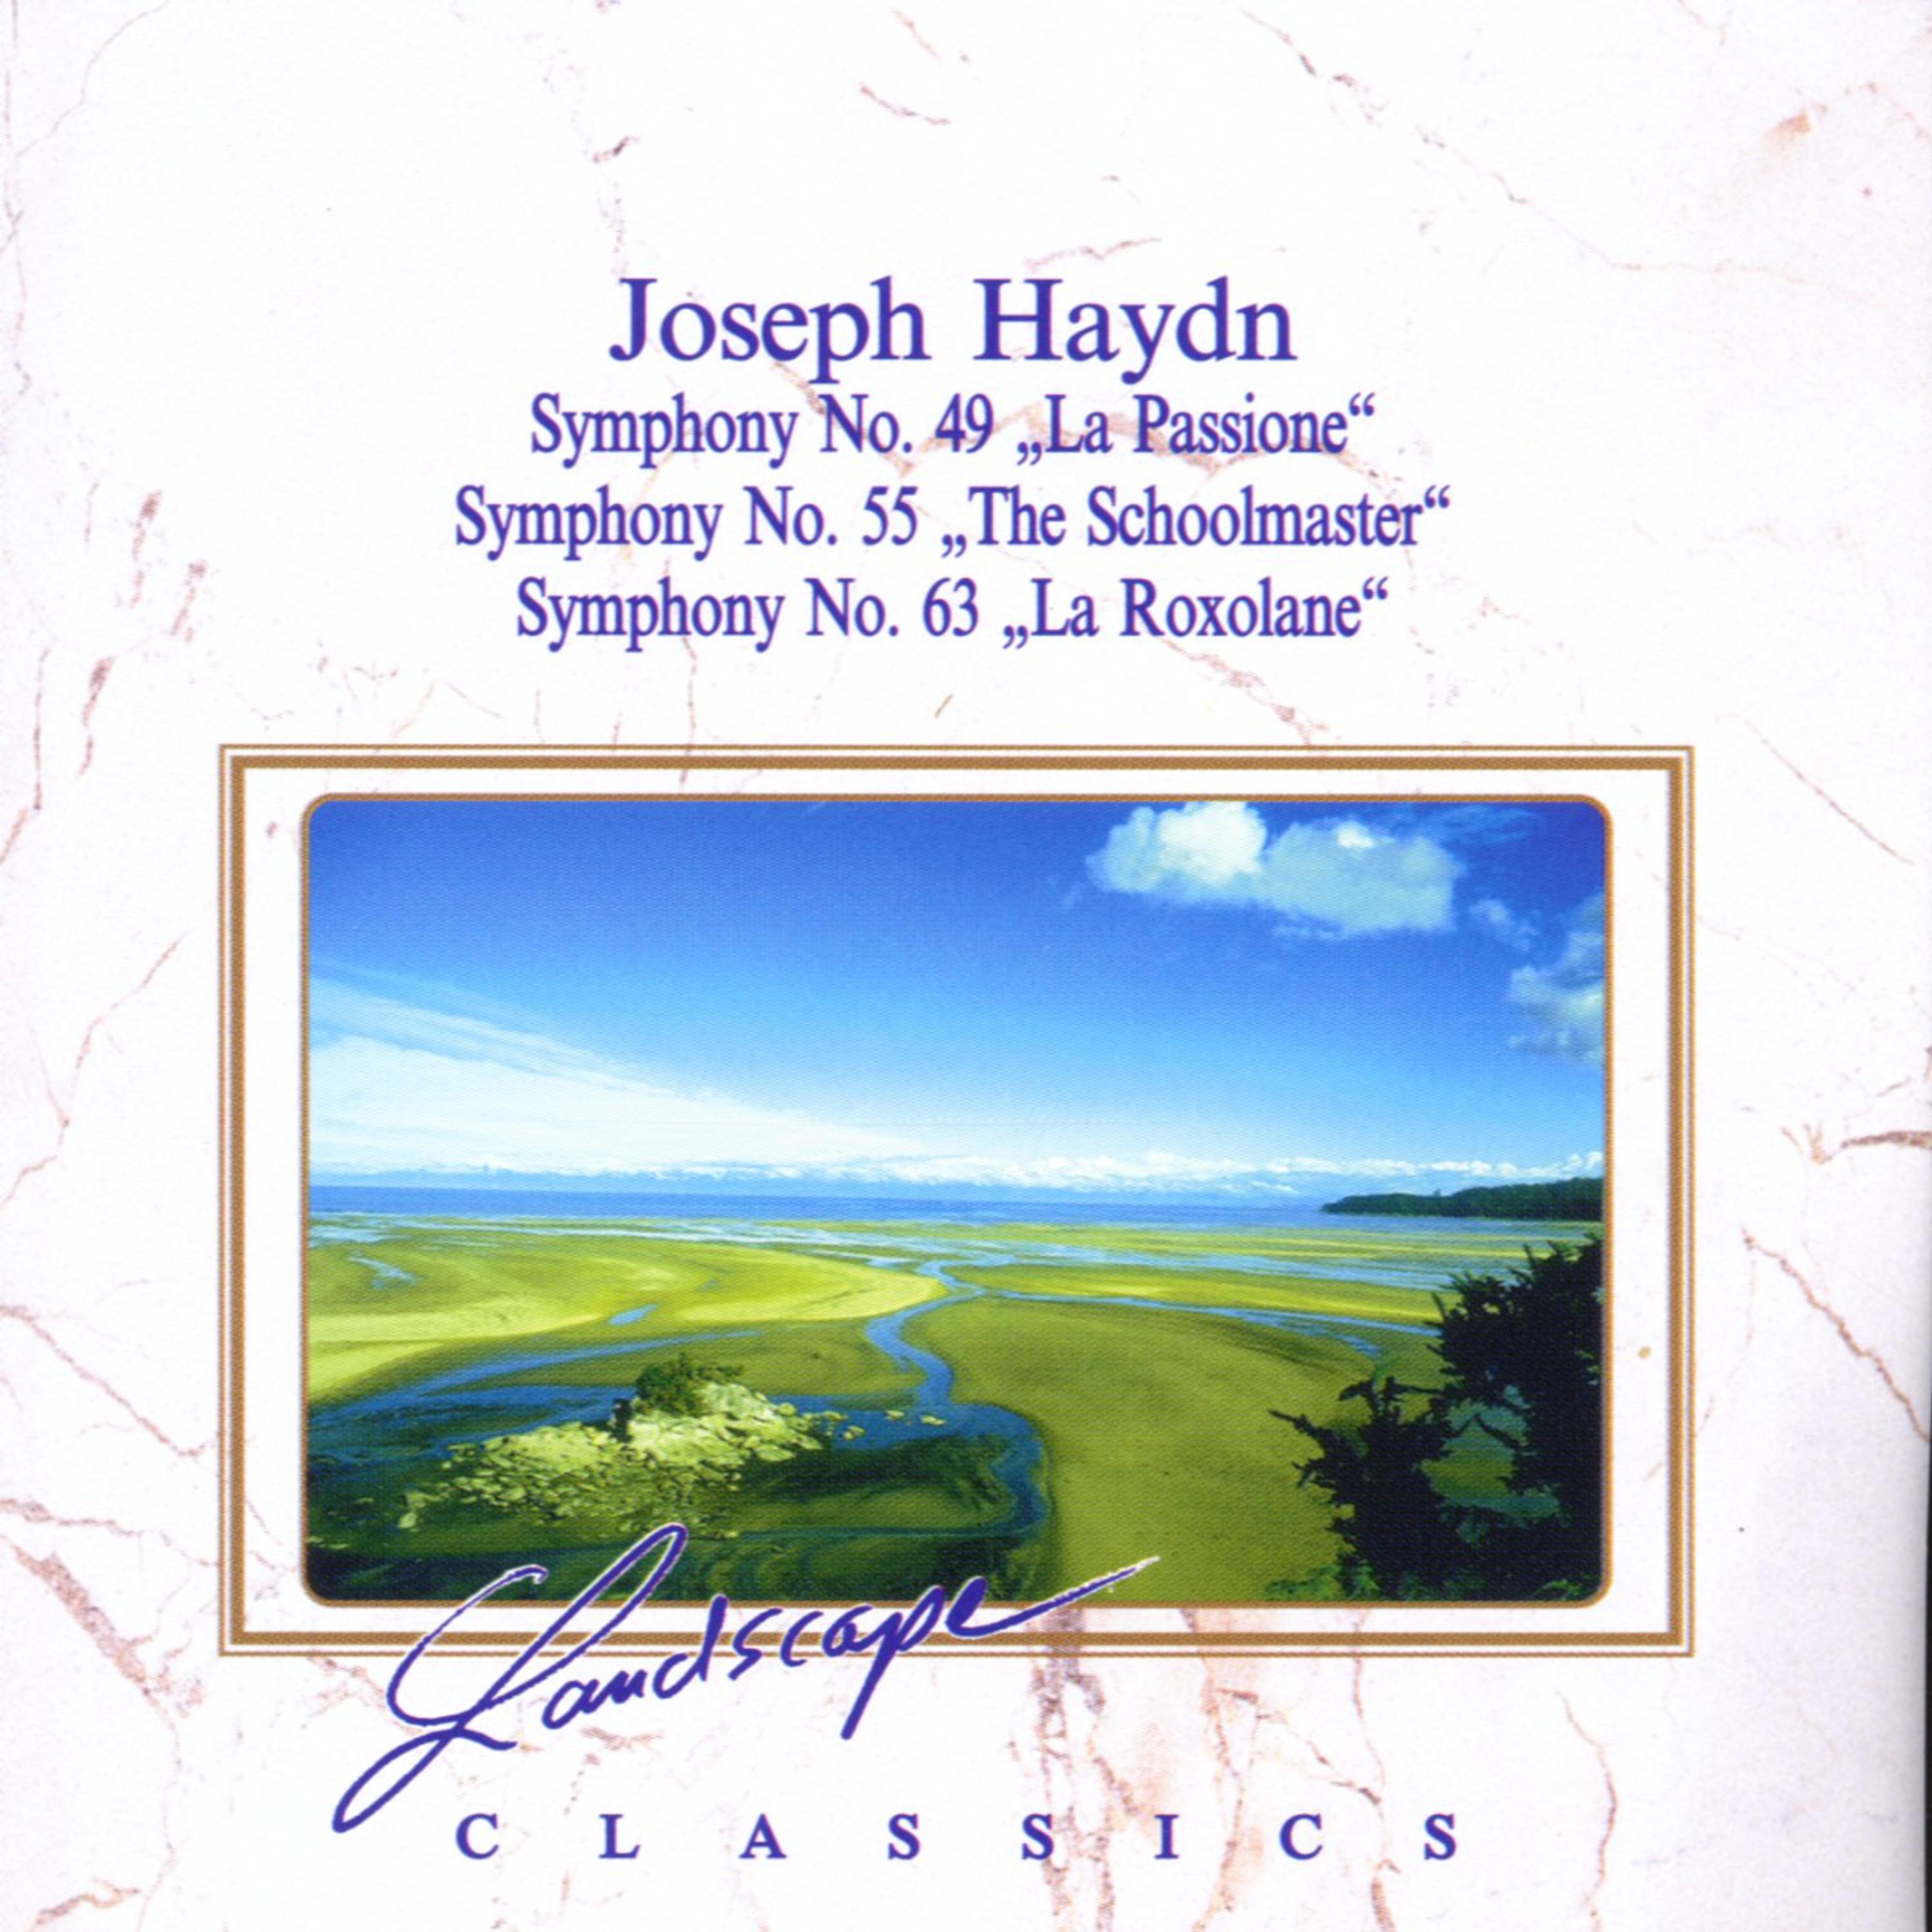 Joseph Haydn: Sinfonie Nr. 49, F-Moll -Sinfonie Nr. 55, Es-Dur - Sinfonie Nr. 63, C-Dur